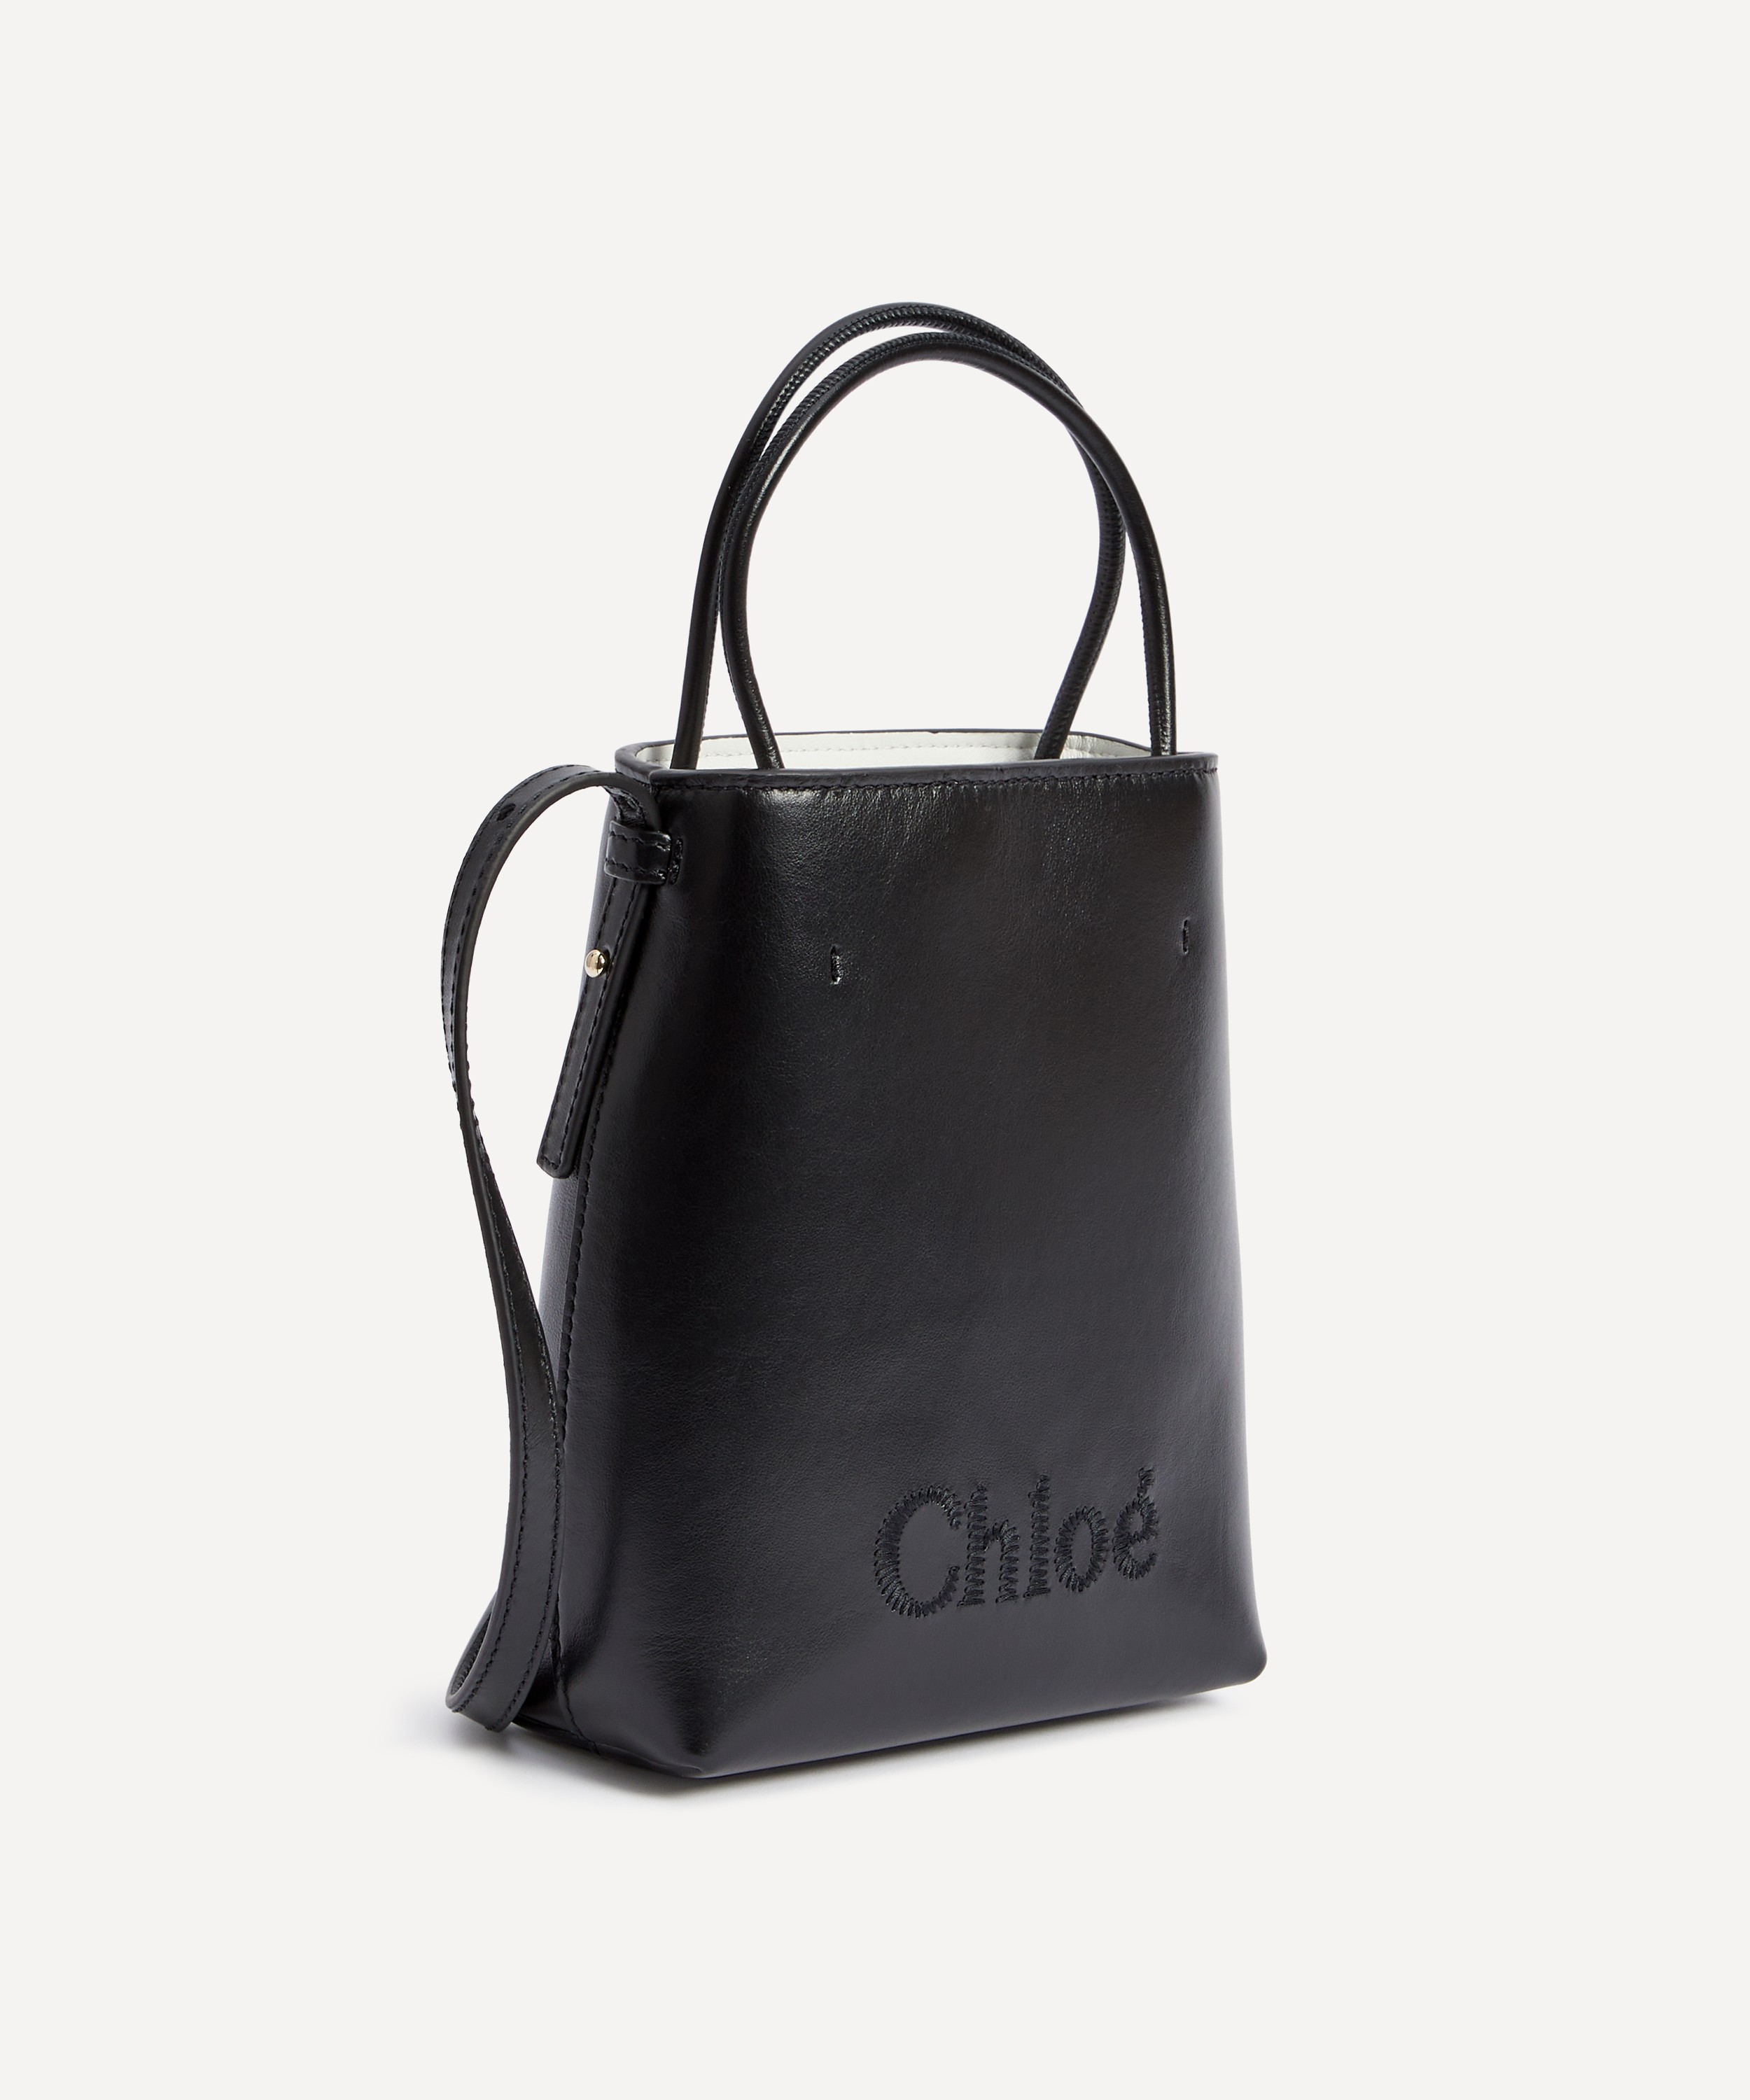 Chloé Chloé Sense Micro Tote Bag